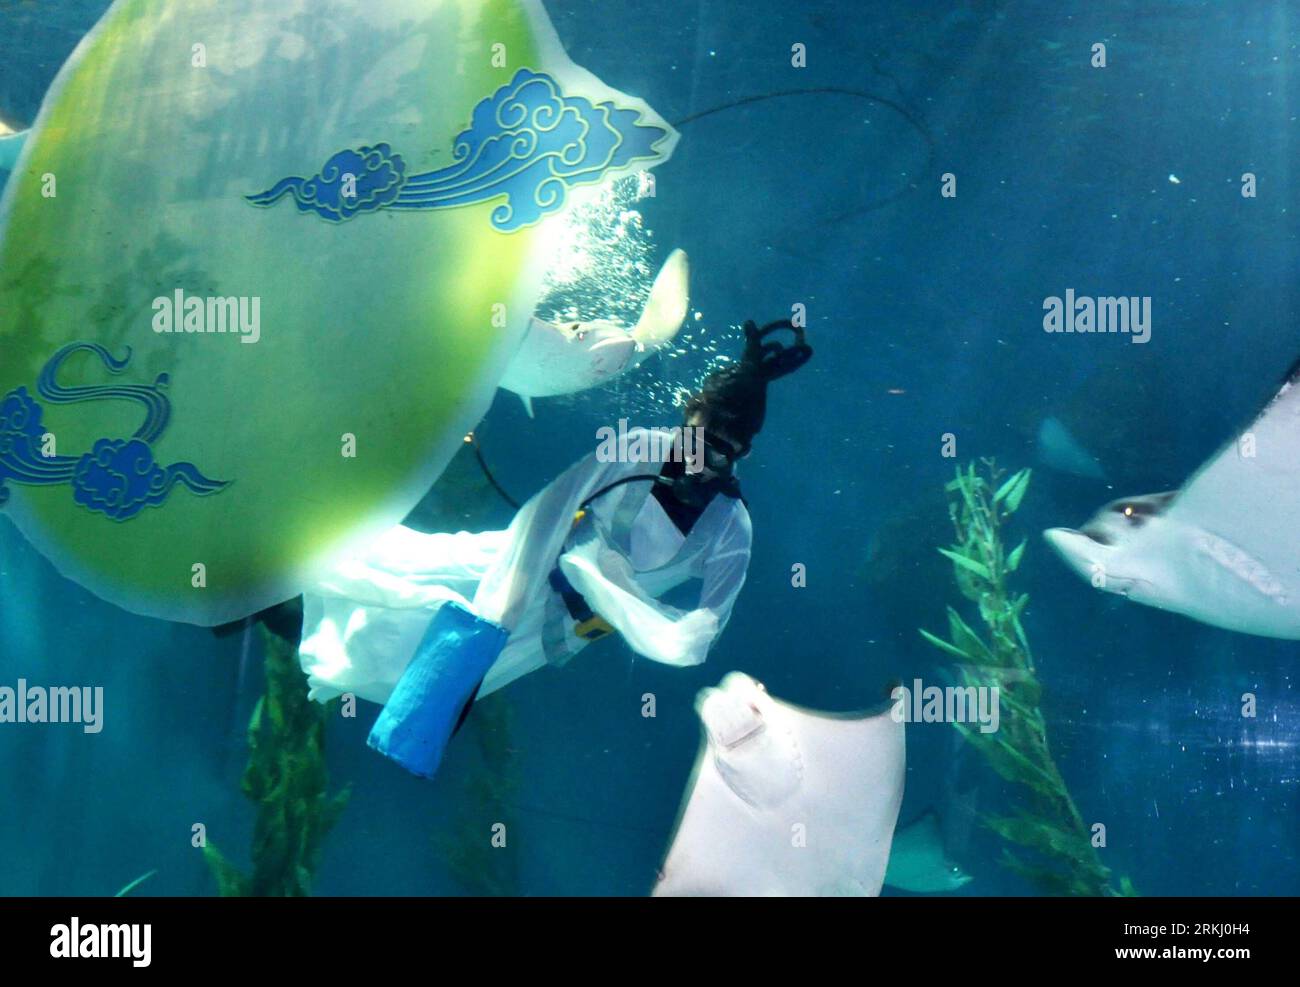 Bildnummer : 55936097 Datum : 11.09.2011 Copyright : imago/Xinhua SHANGHAI, 11 septembre 2011 (Xinhua) -- Un plongeur habillé en Chang e, la daieté chinoise de la lune, se produit pour les visiteurs dans un aquarium océanique de Shanghai à Shanghai, dans l'est de la Chine, le 11 septembre 2011, pour célébrer le jour de mi-automne qui tombe le 12 septembre. (Xinhua/Liu Ying) (zhs) CHINE-SHANGHAI-FÊTES DE LA MI-AUTOMNE (CN) PUBLICATIONxNOTxINxCHN Gesellschaft x2x xtm 2011 quer o0 Taucher Mondgöttin Kostüm o00 Mondfest 55936097 Date 11 09 2011 Copyright Imago XINHUA Shanghai sept 11 2011 XINHUA un plongeur habillé en Chang e Chinois Banque D'Images